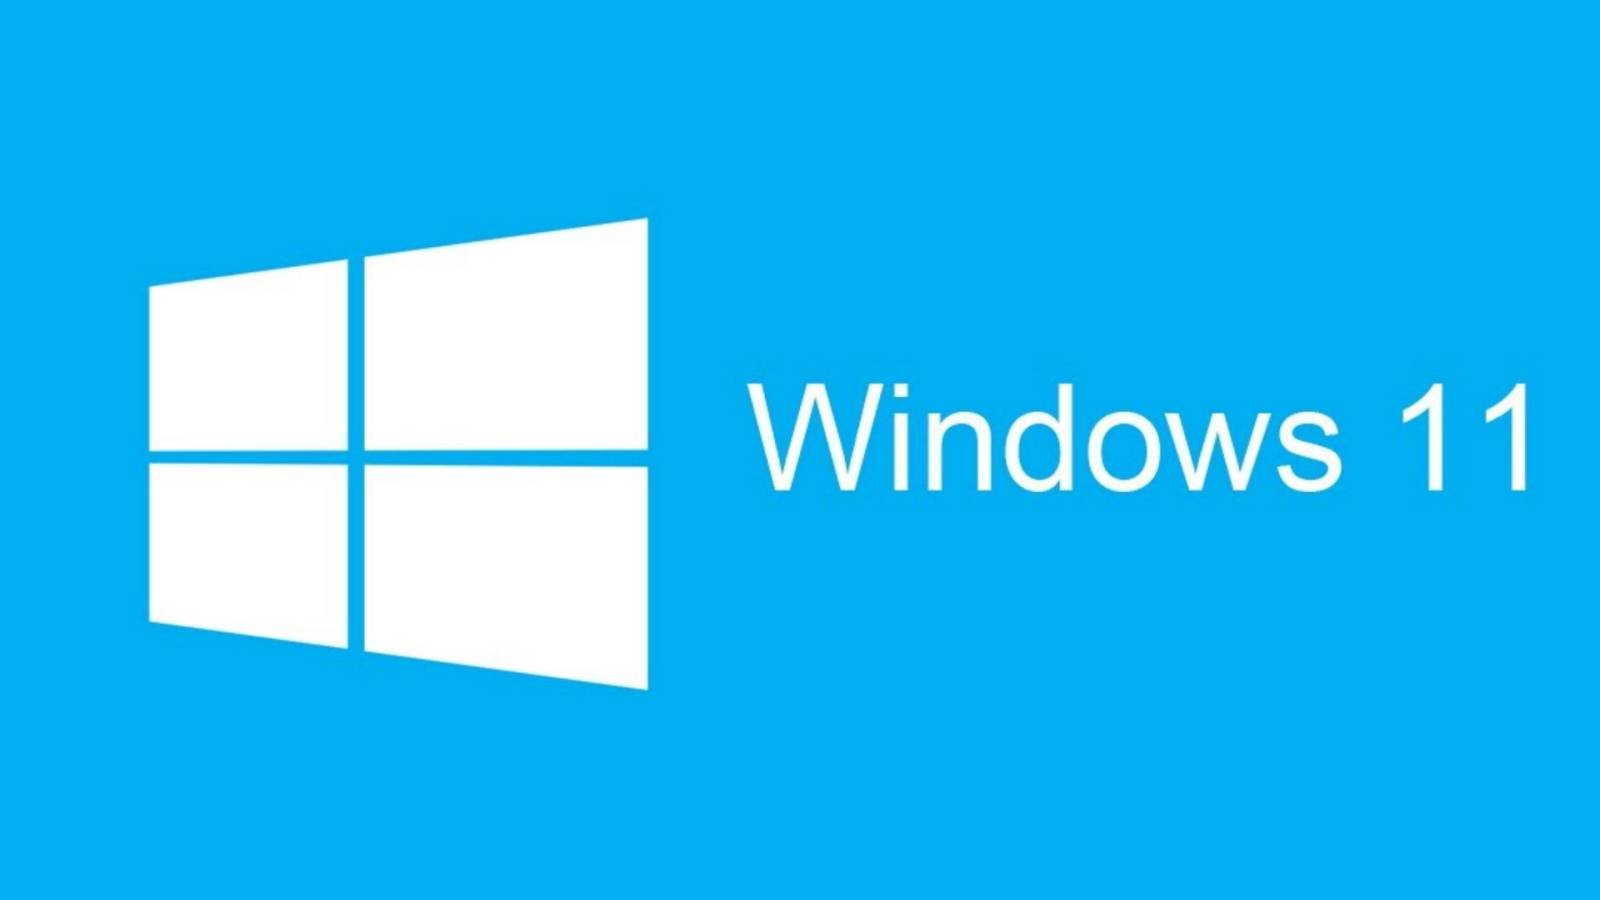 ALERTA Importante anuncio de Windows 11 realizado por Microsoft